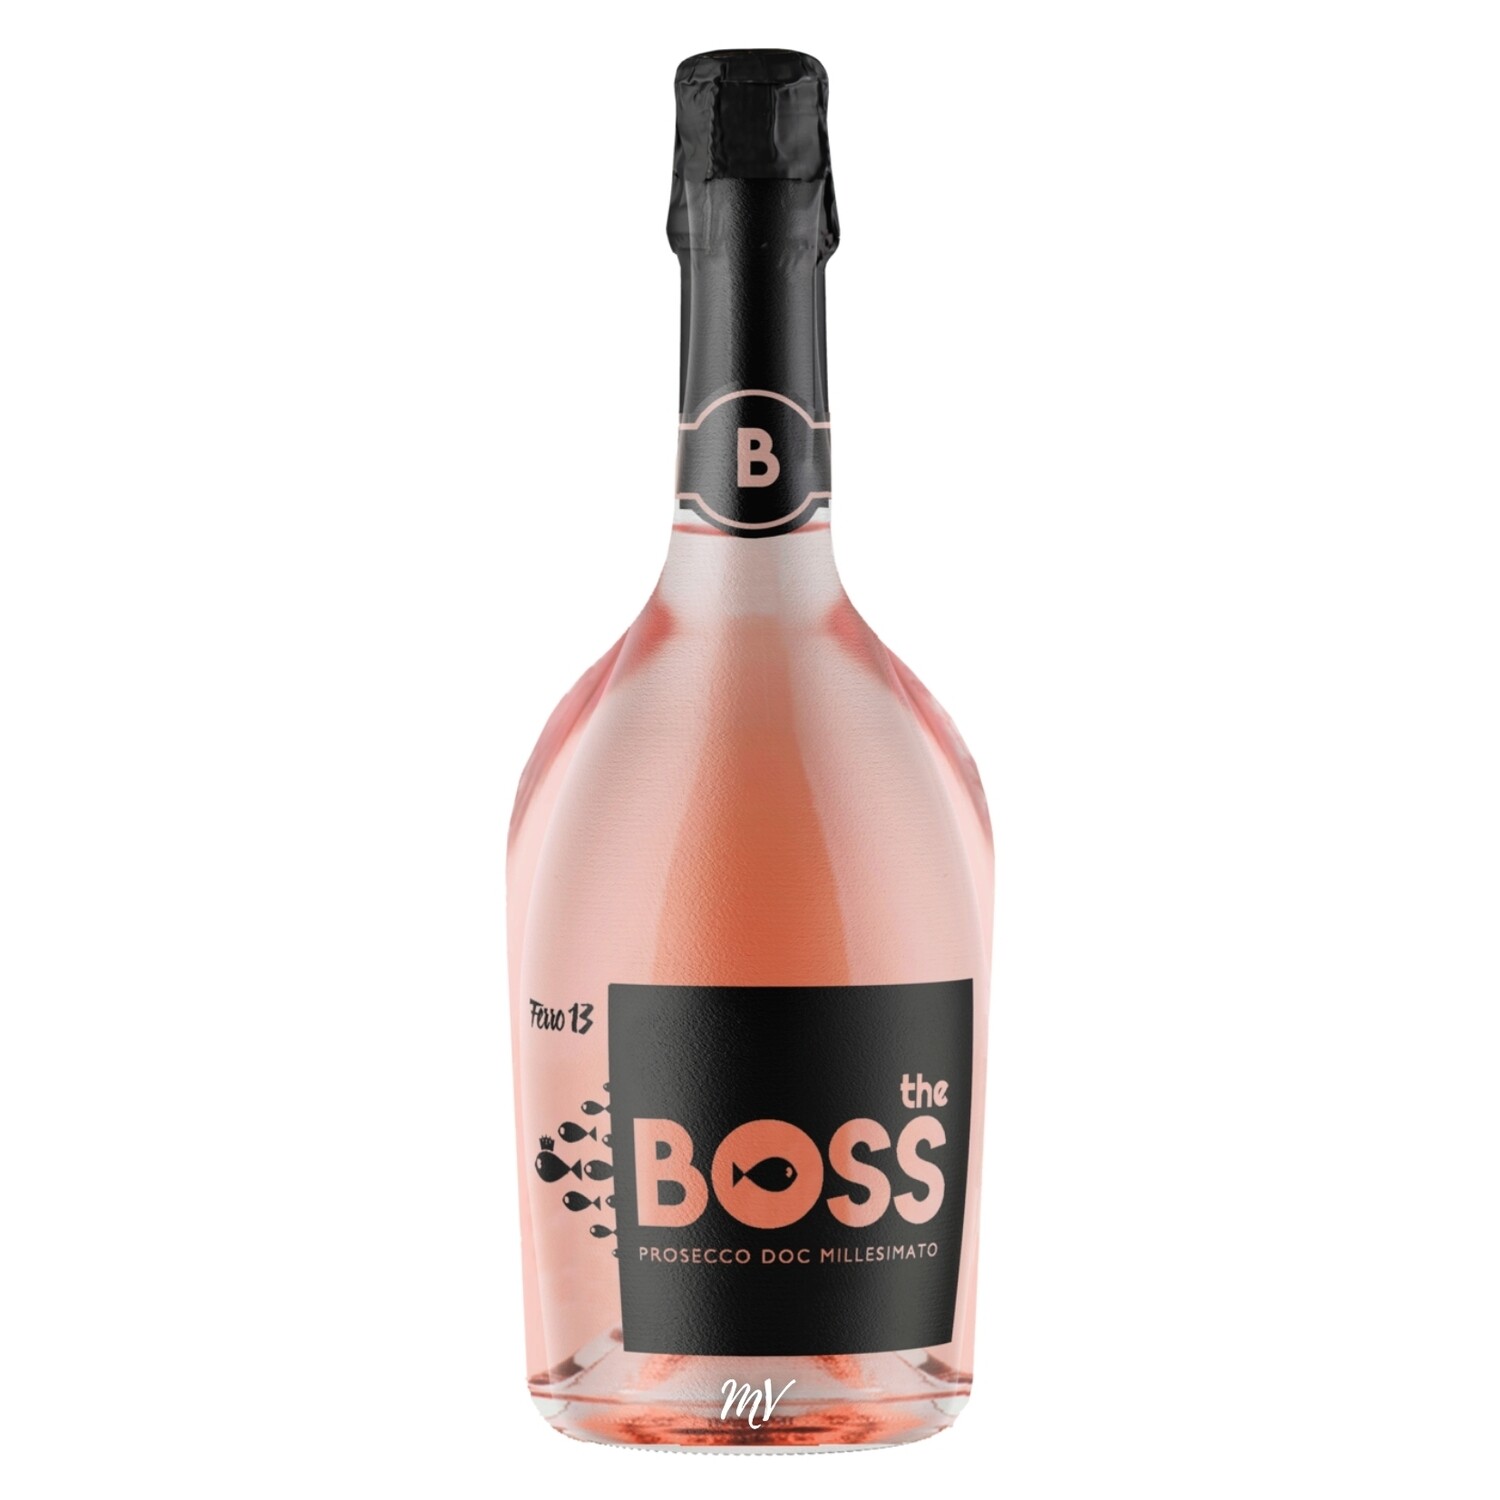 Ferro 13 - The Boss Prosecco rosé